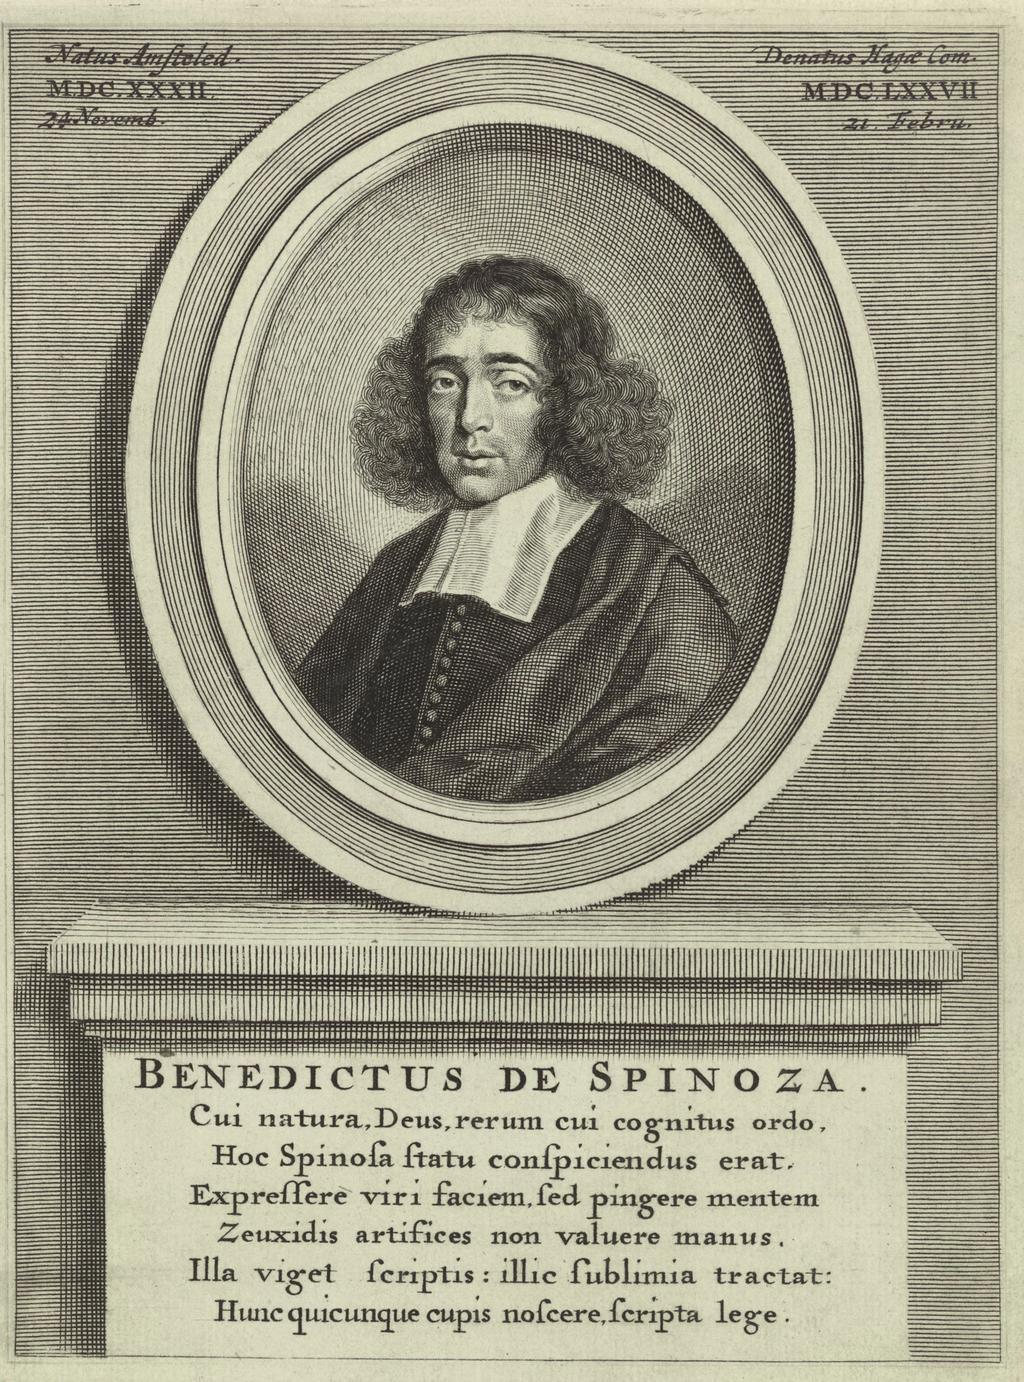 Wiep van Bunge Fig. 1: Portret van Baruch/Benedictus de Spinoza (1632 1677), door onbekende graveur, bijgebonden in sommige edities van de Opera Posthuma (1677).